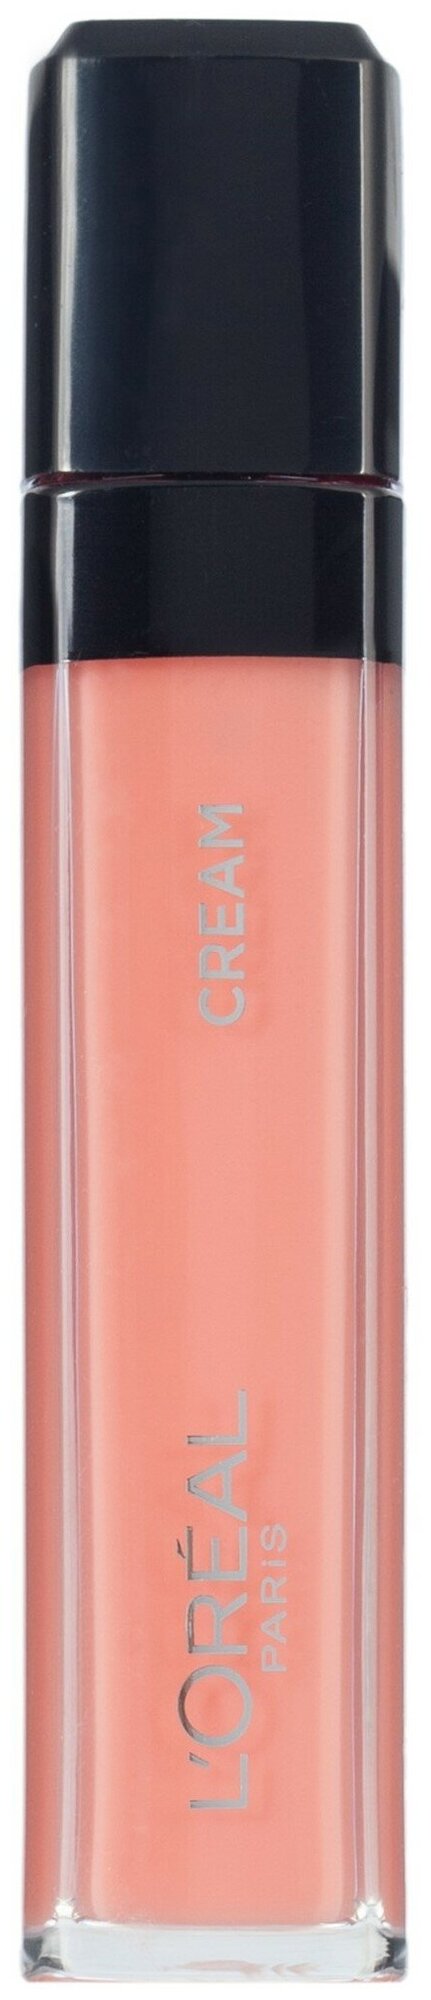 L'Oreal Paris Infaillible Mega gloss Безупречный блеск для губ кремовый, 101, Верх совершенства